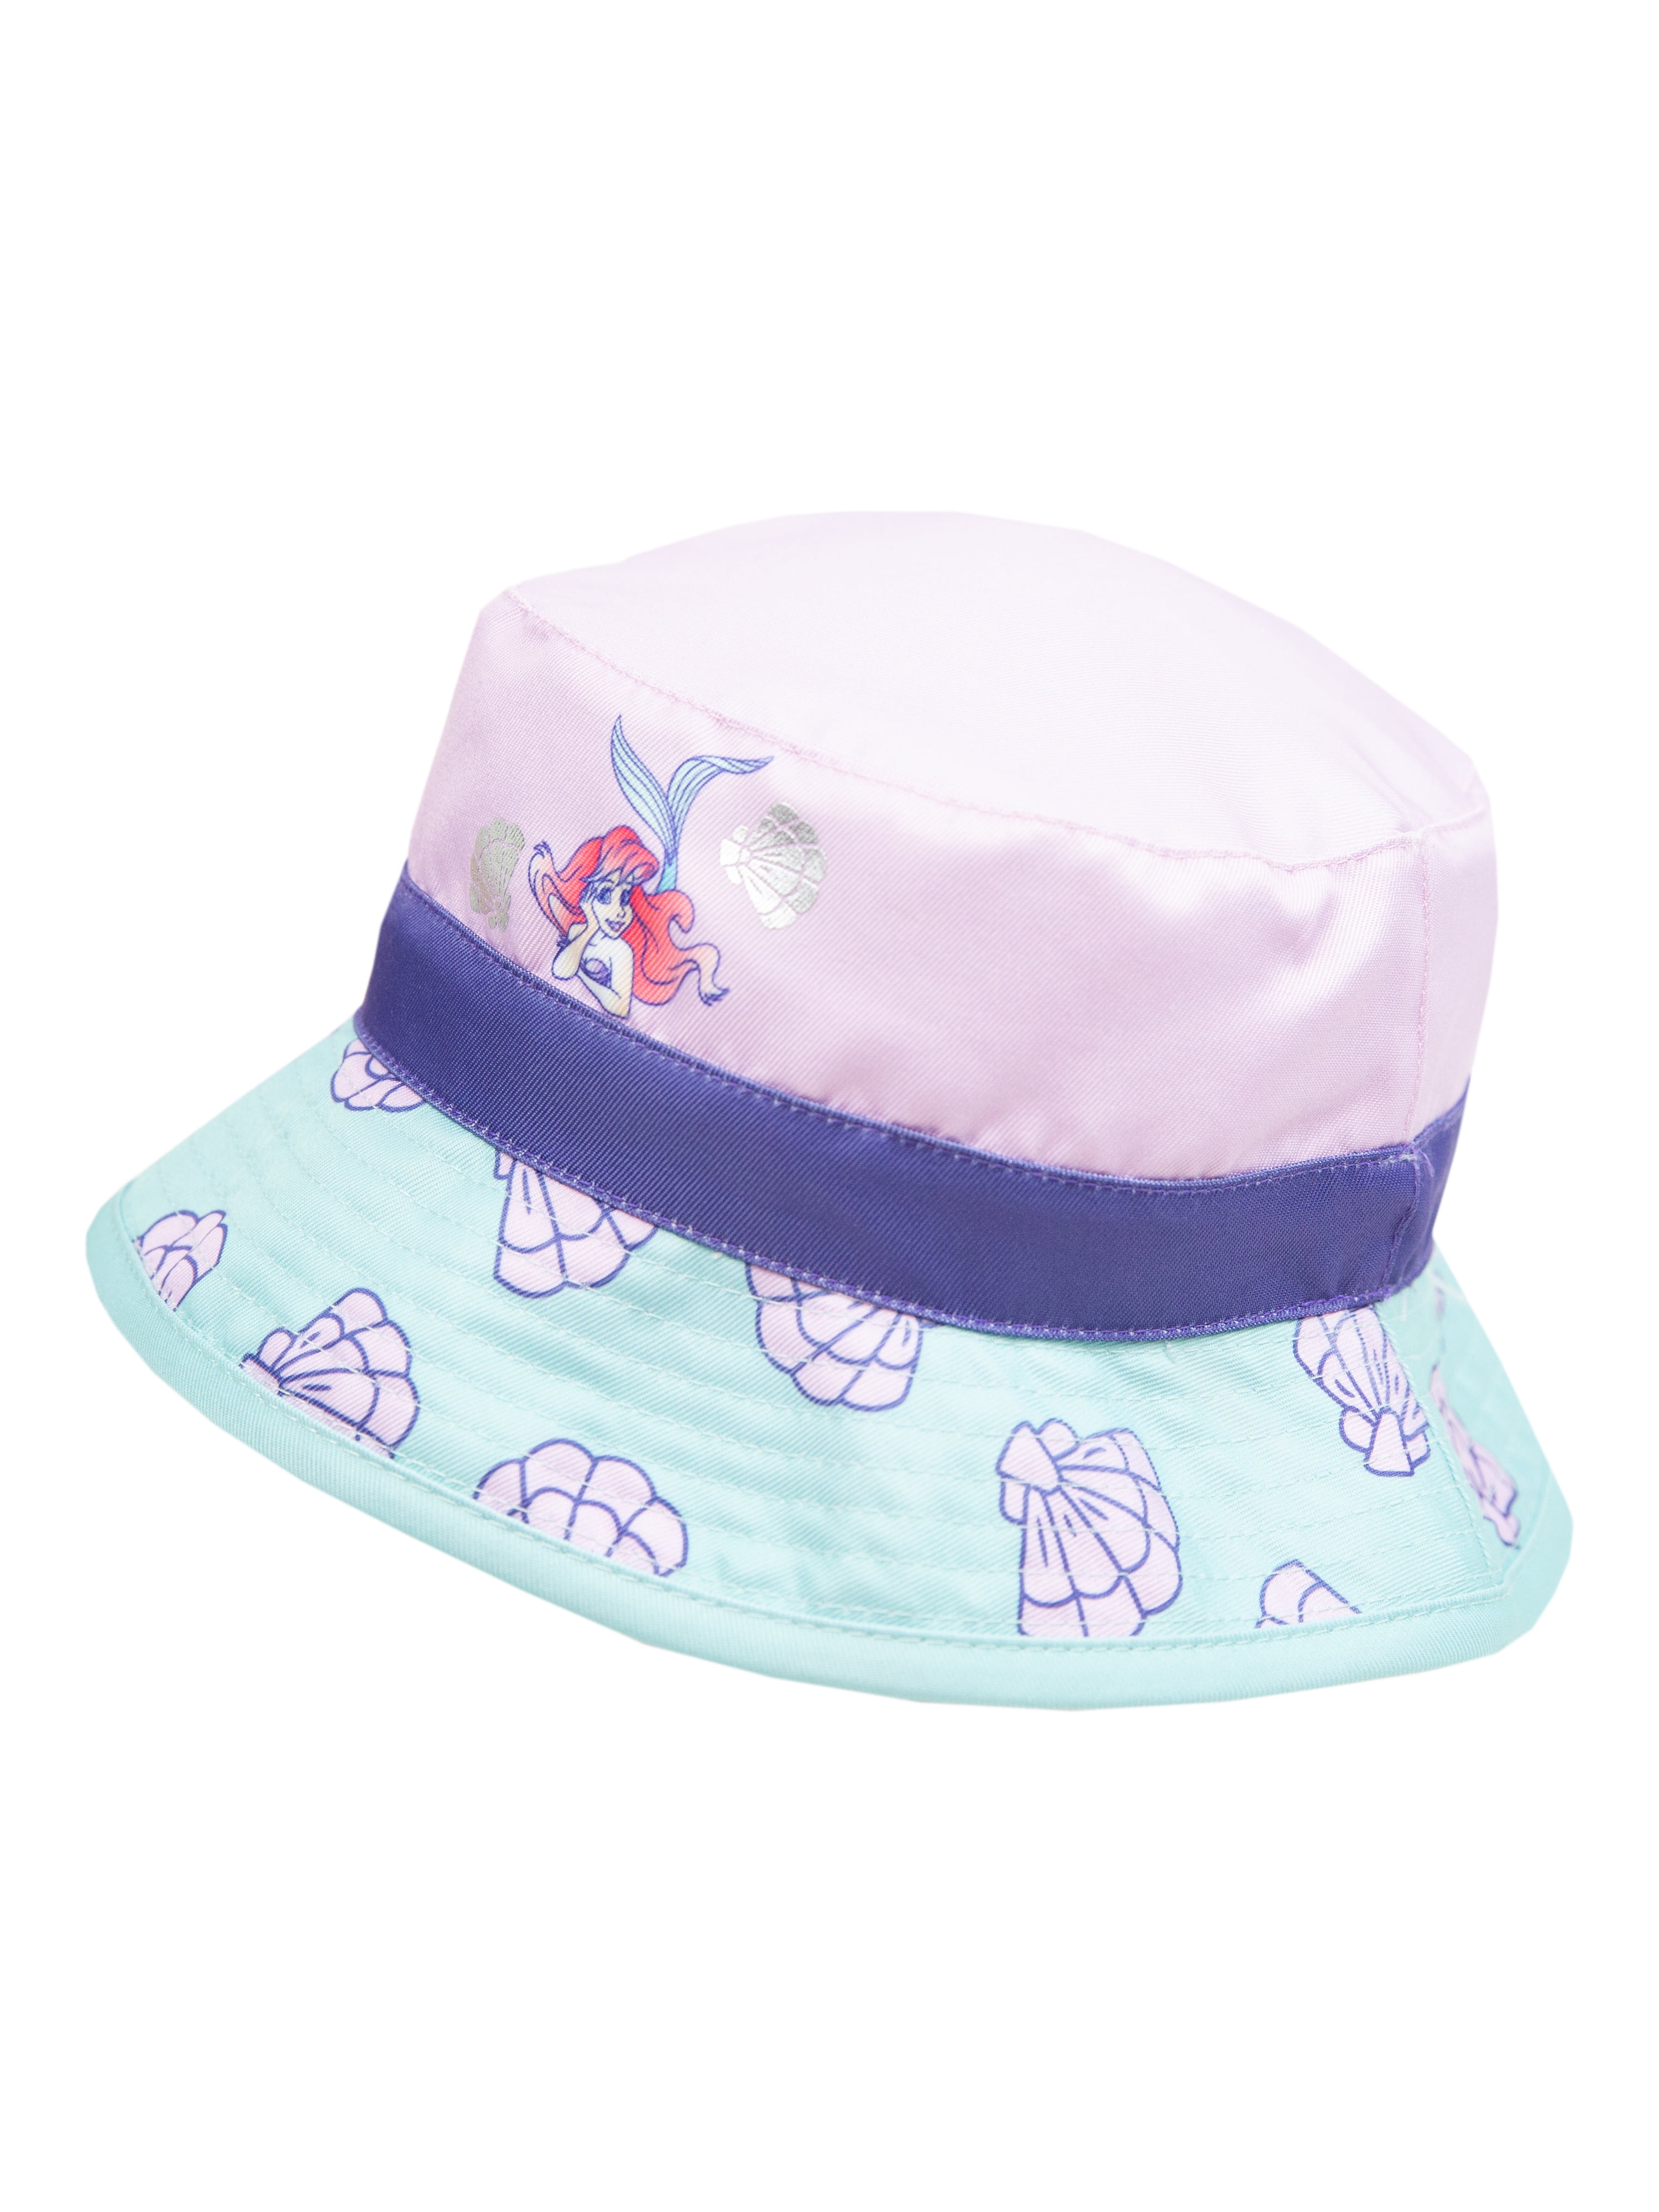 Disney Little Mermaid Toddler Girls Light Blue Reversible Bucket Style Swim Hat